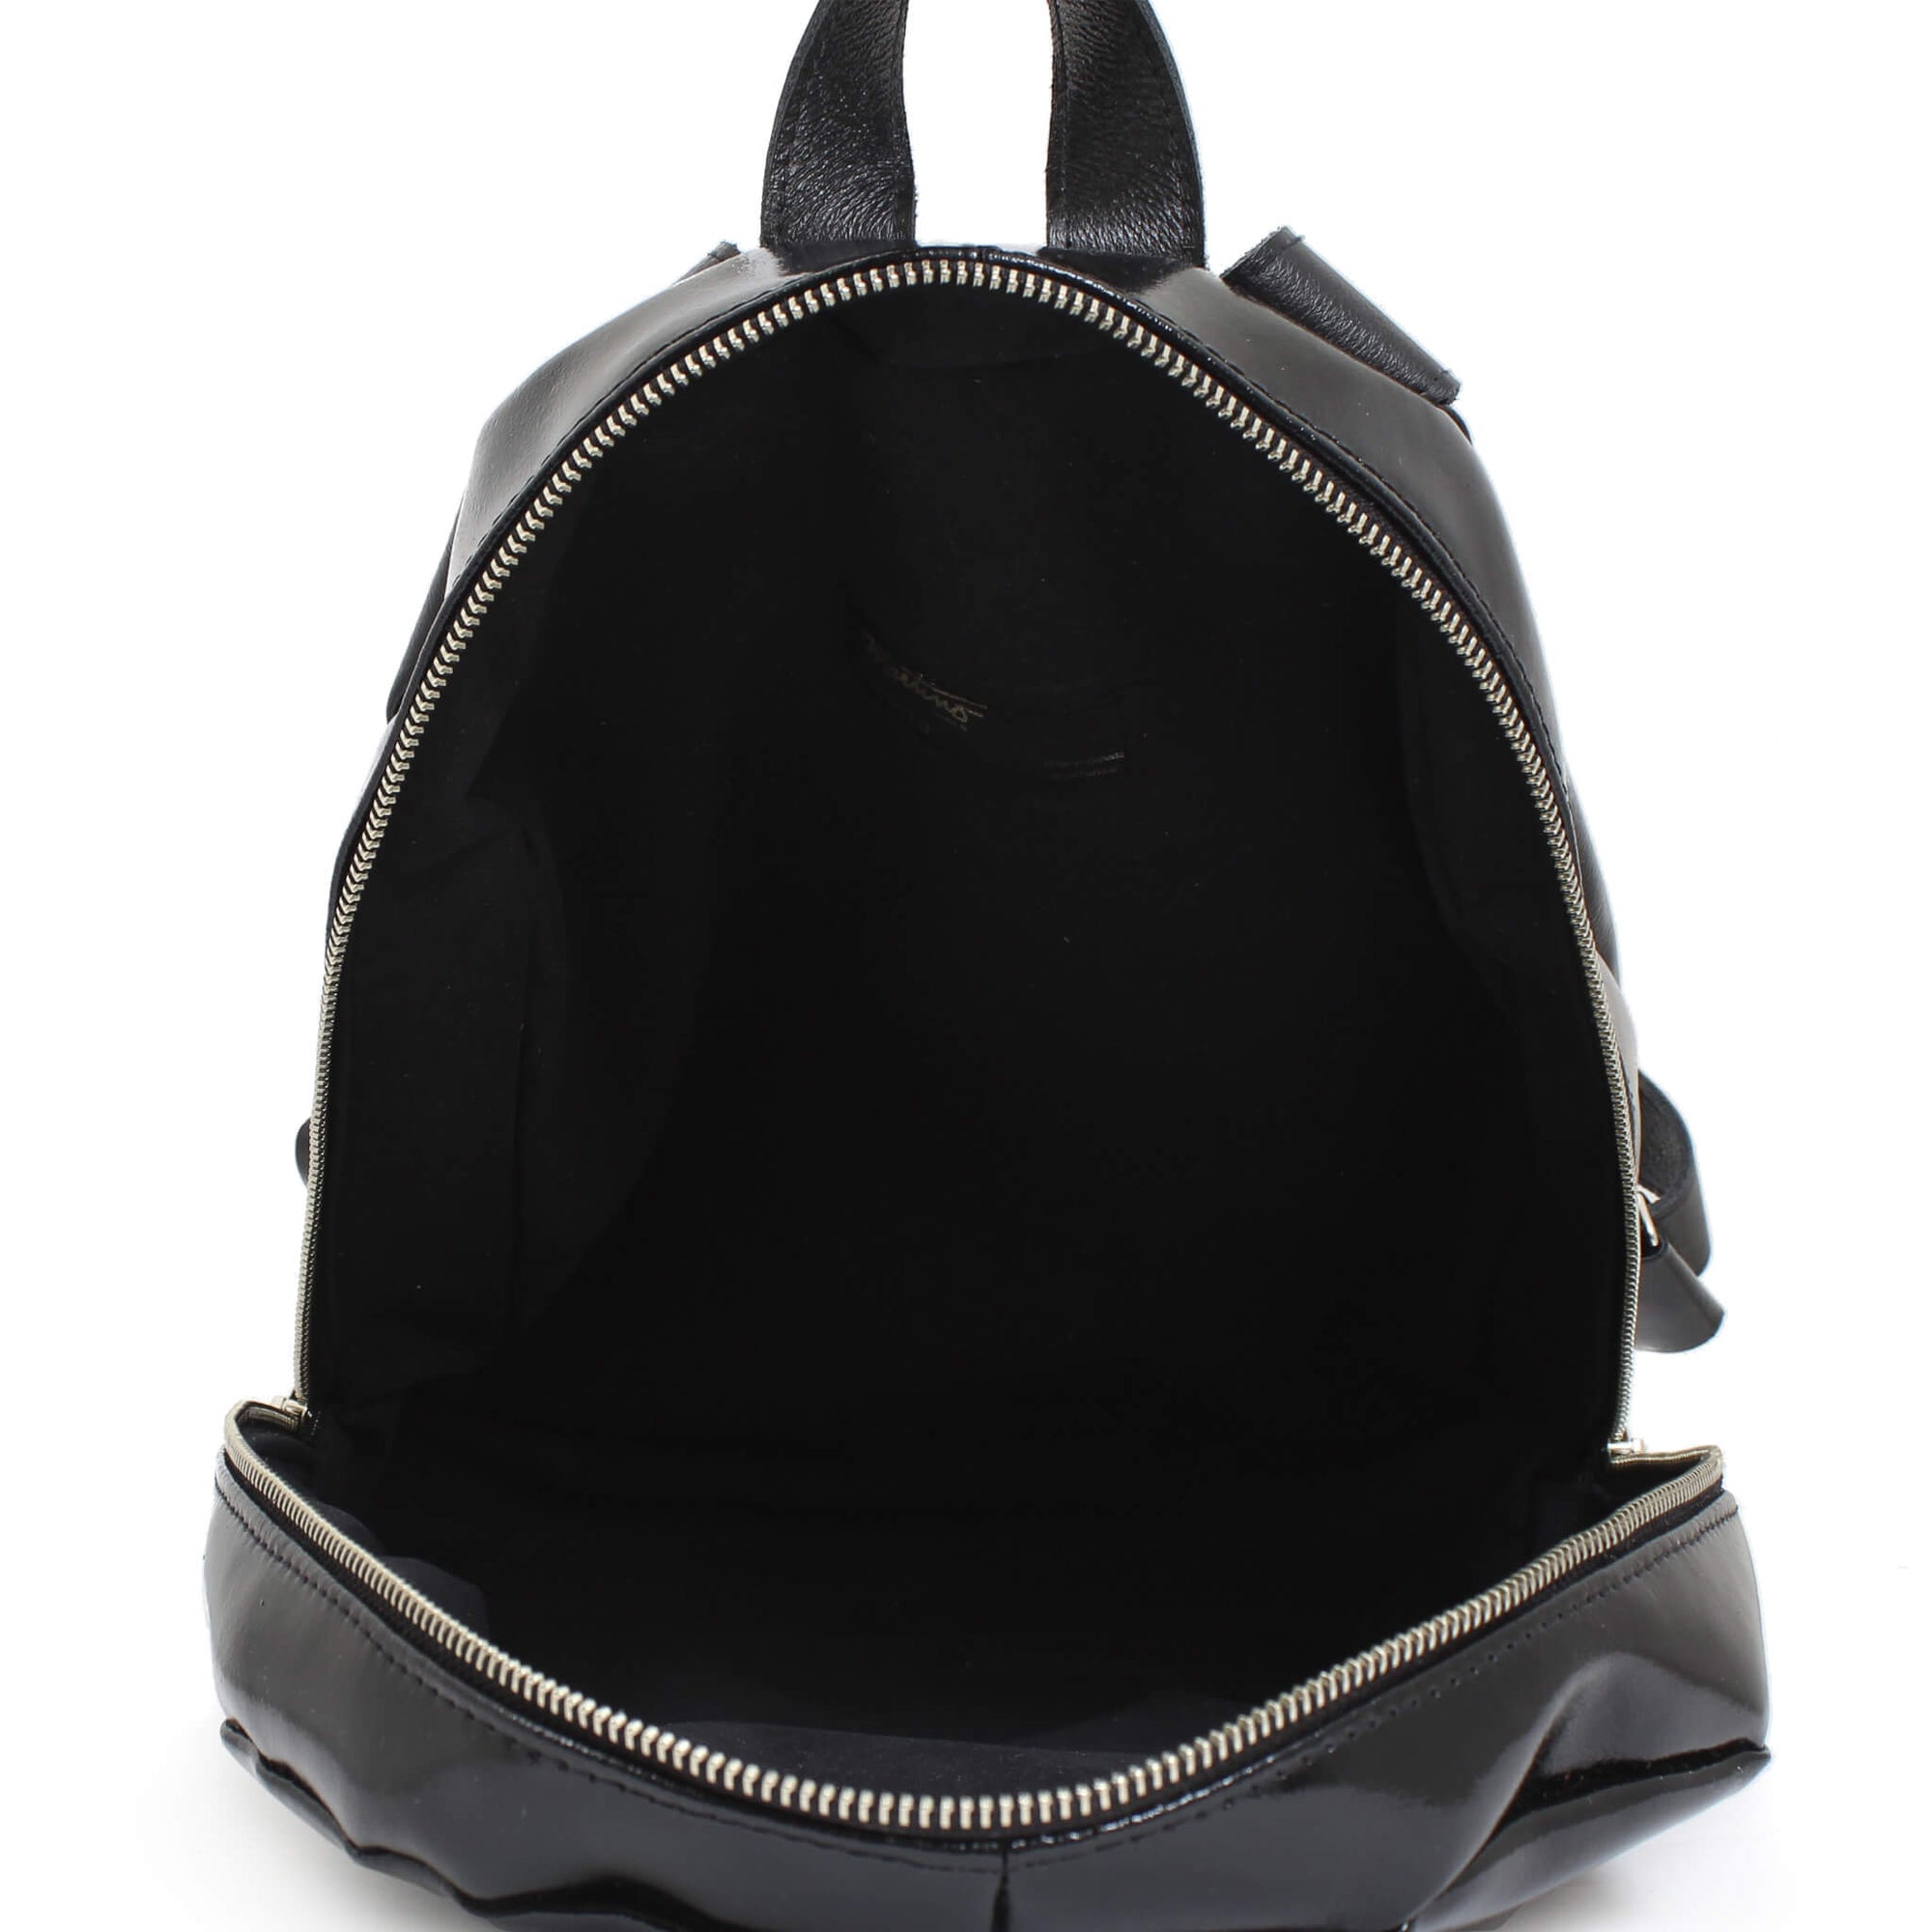 Festival Backpack - Black Patent